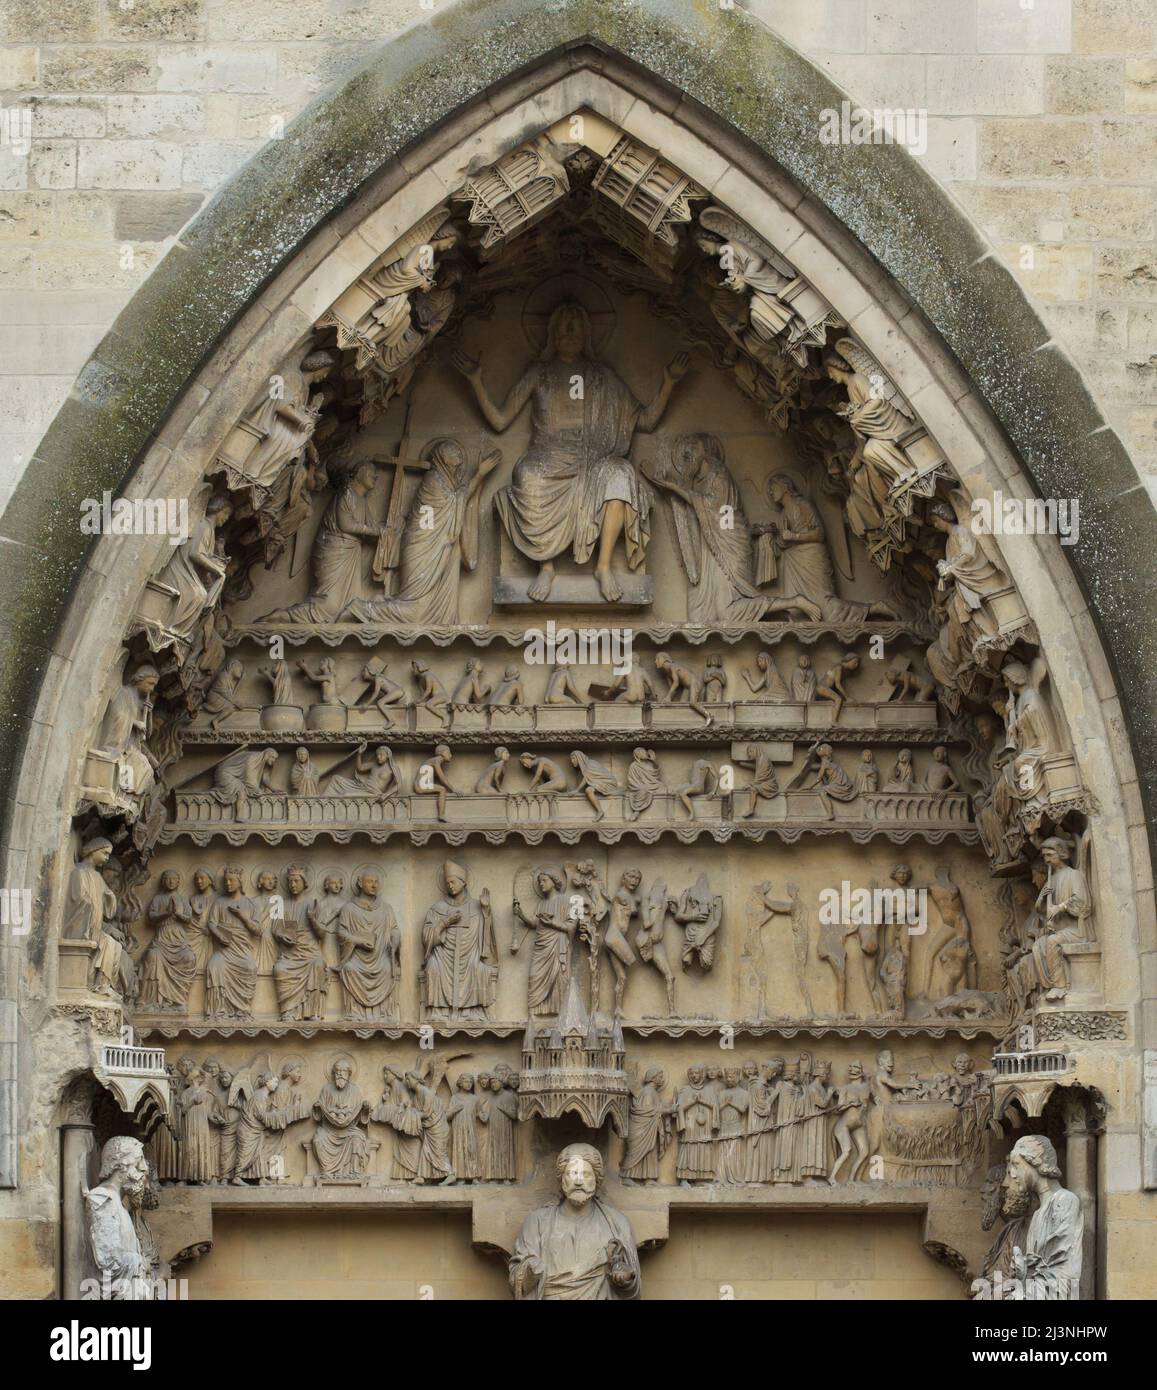 Dernier jugement représenté dans le tympan du portail gauche de la façade nord de la cathédrale de Reims (Cathédrale notre-Dame de Reims) à Reims, France. Banque D'Images